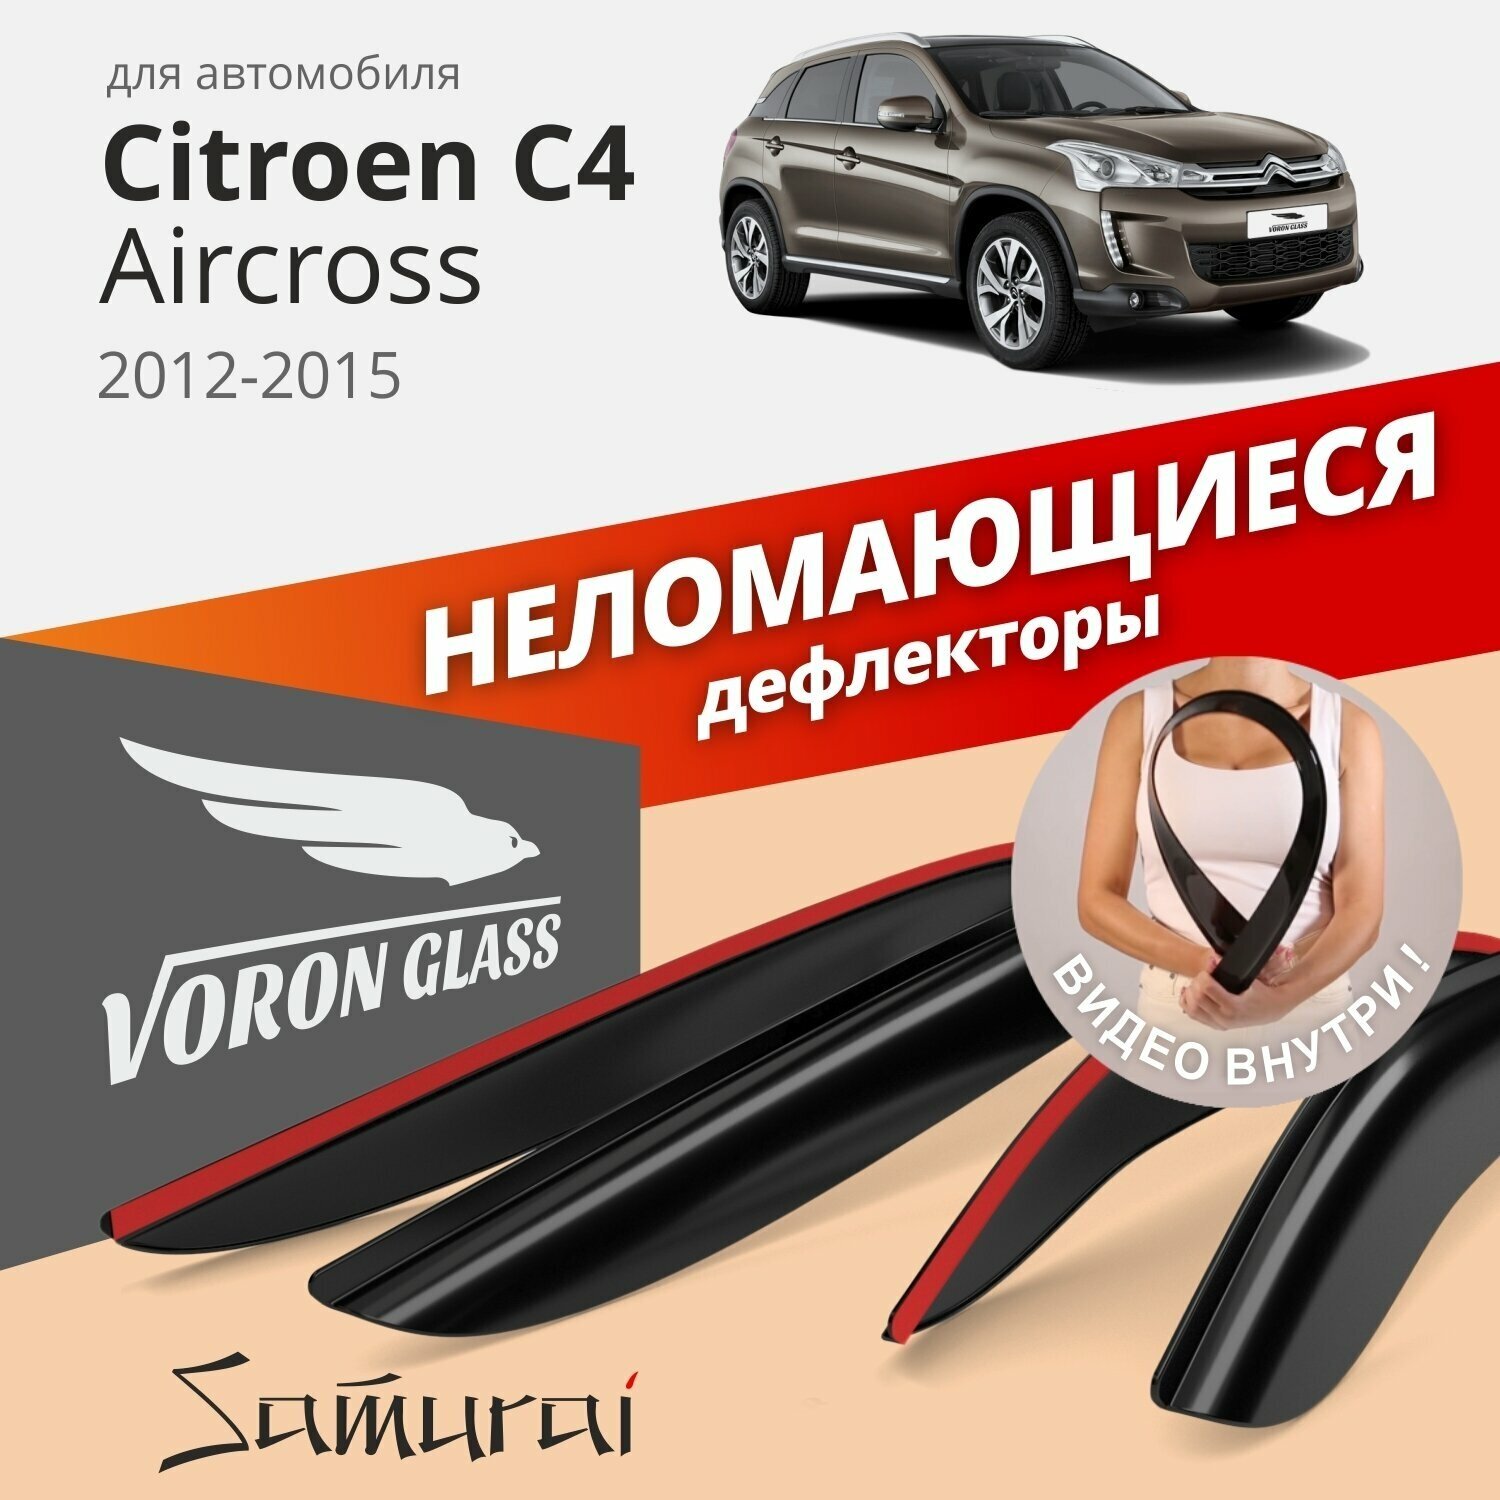 Дефлекторы окон неломающиеся Voron Glass серия Samurai для CITROEN C4 AIRCROSS 2012 - 2015 накладные 4 шт.